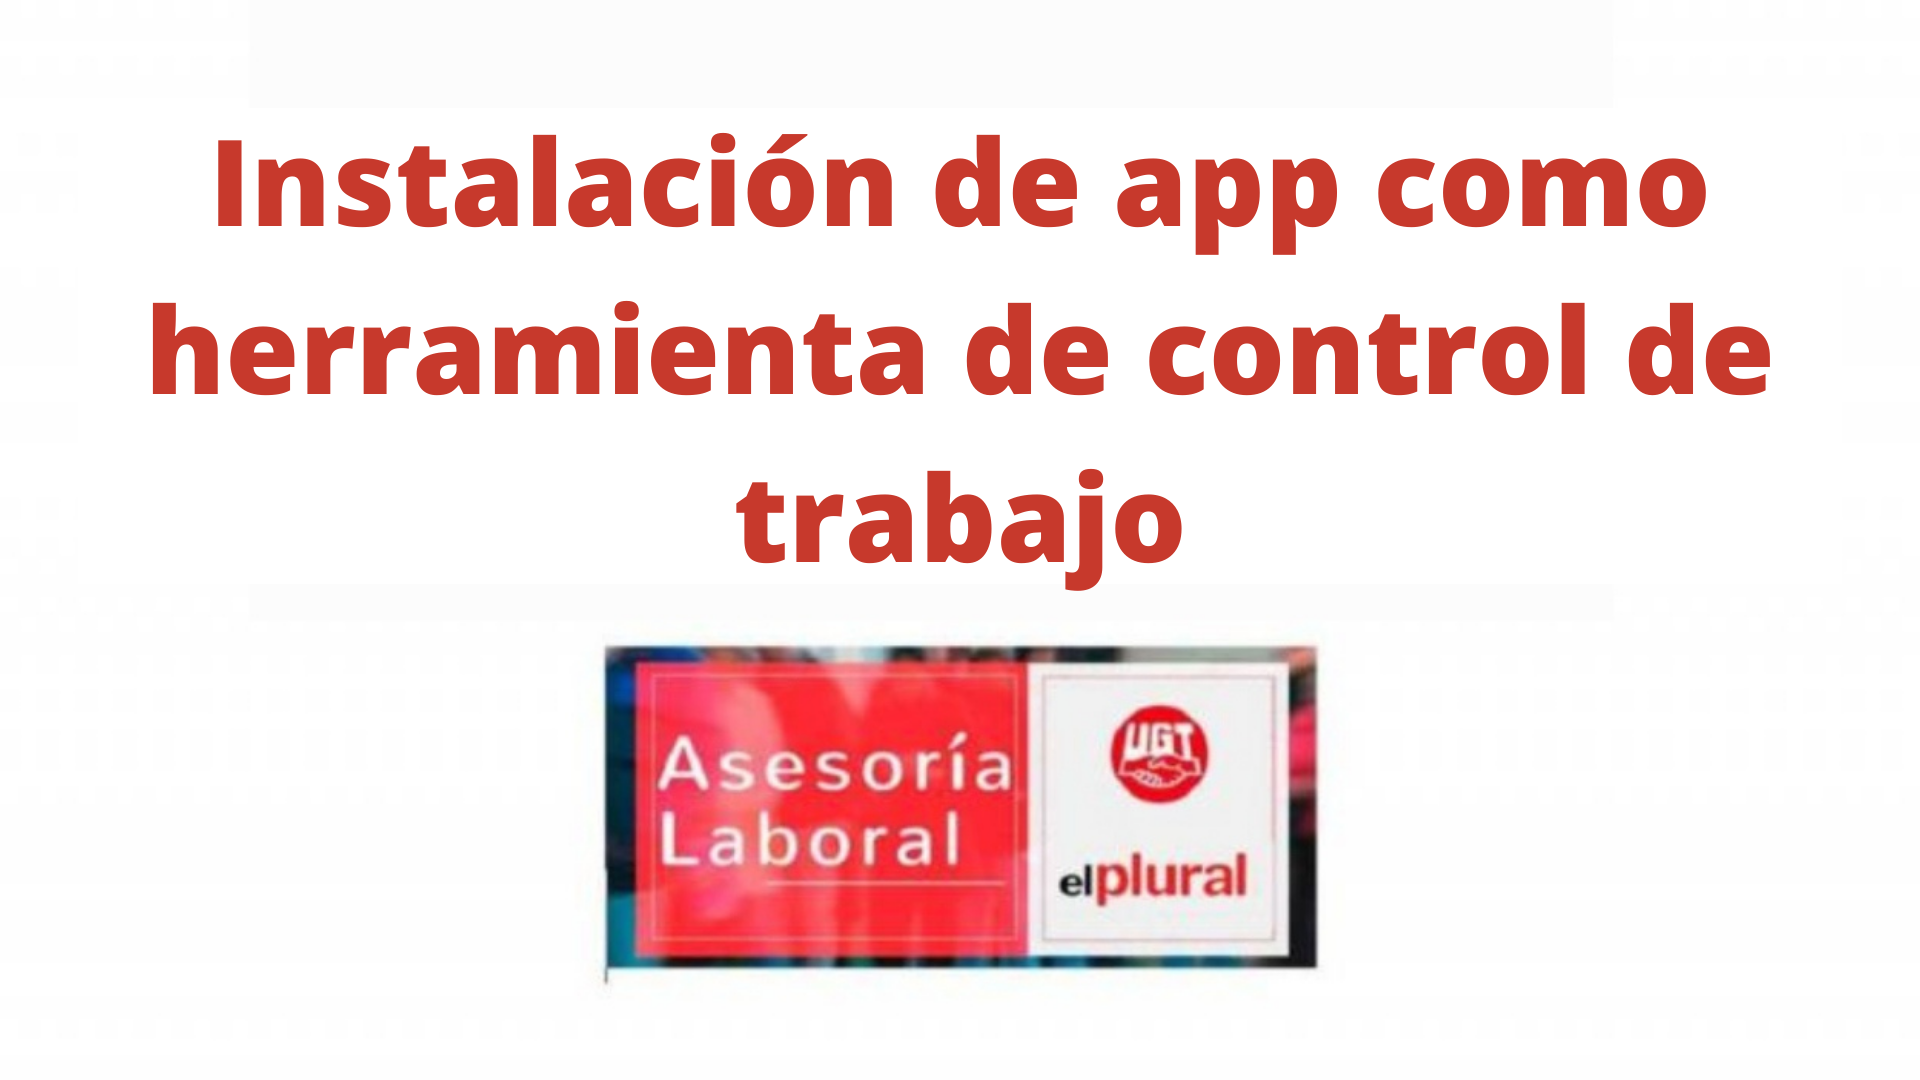 Instalación de app como herramienta de control de trabajo